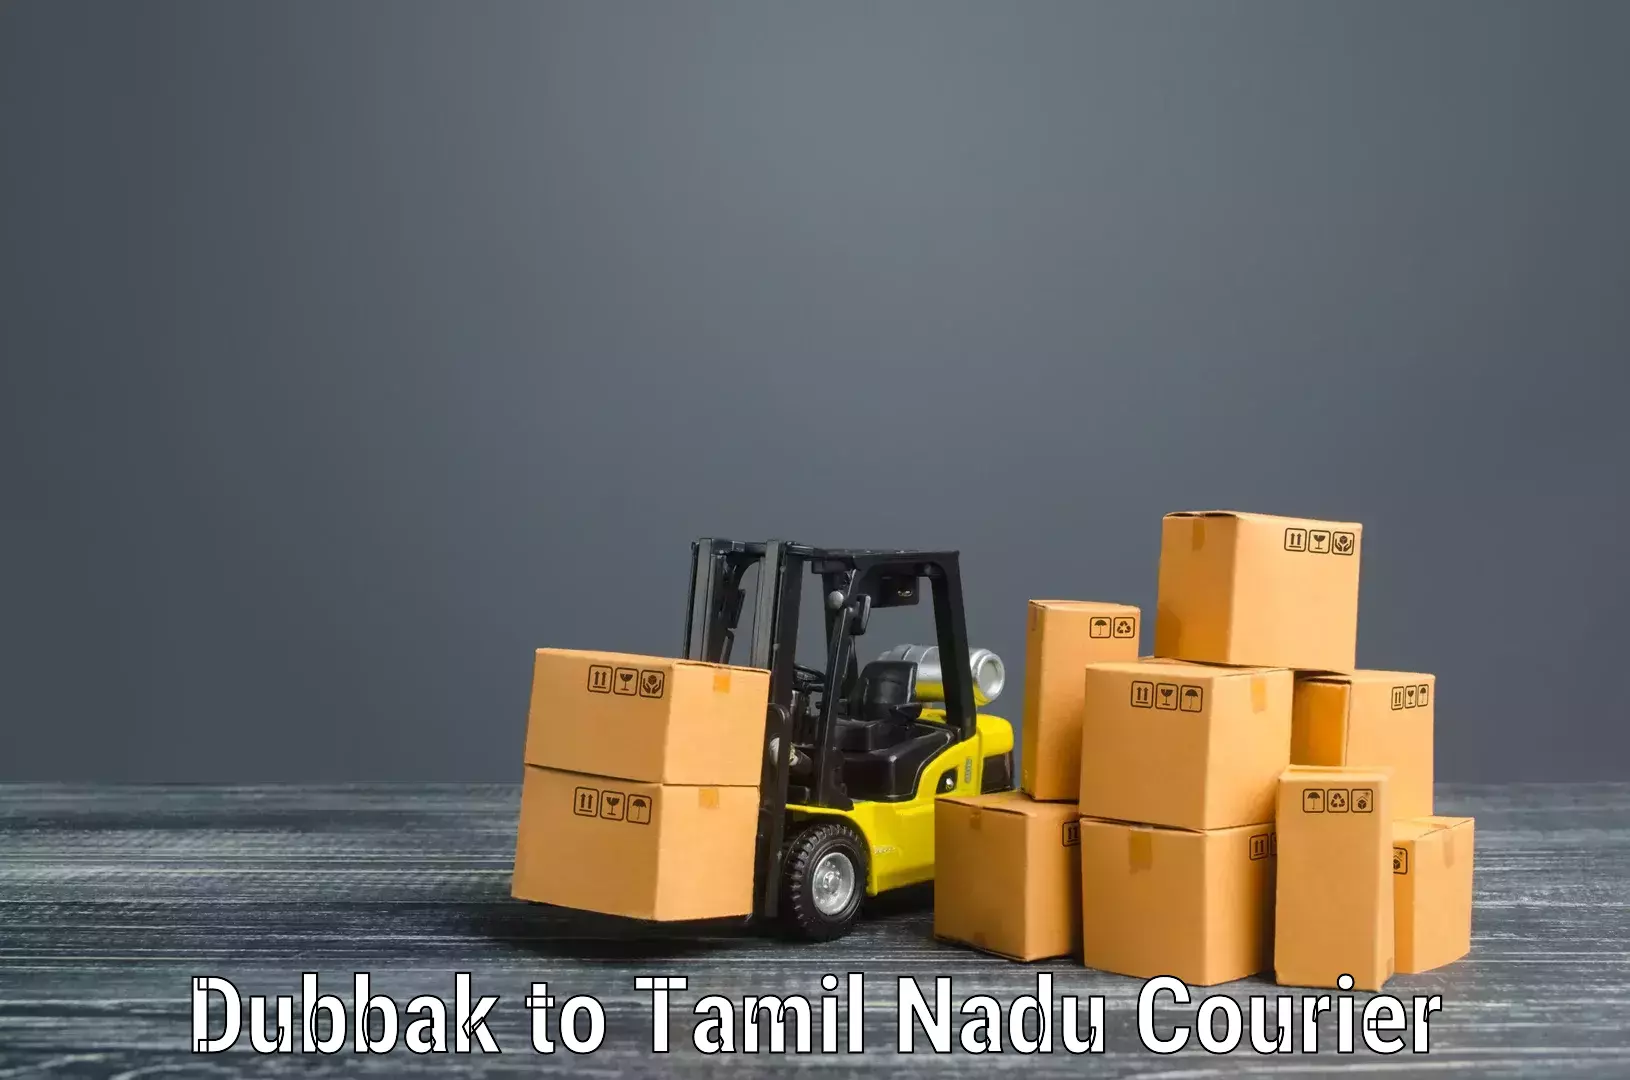 Furniture transport service in Dubbak to Tamil Nadu